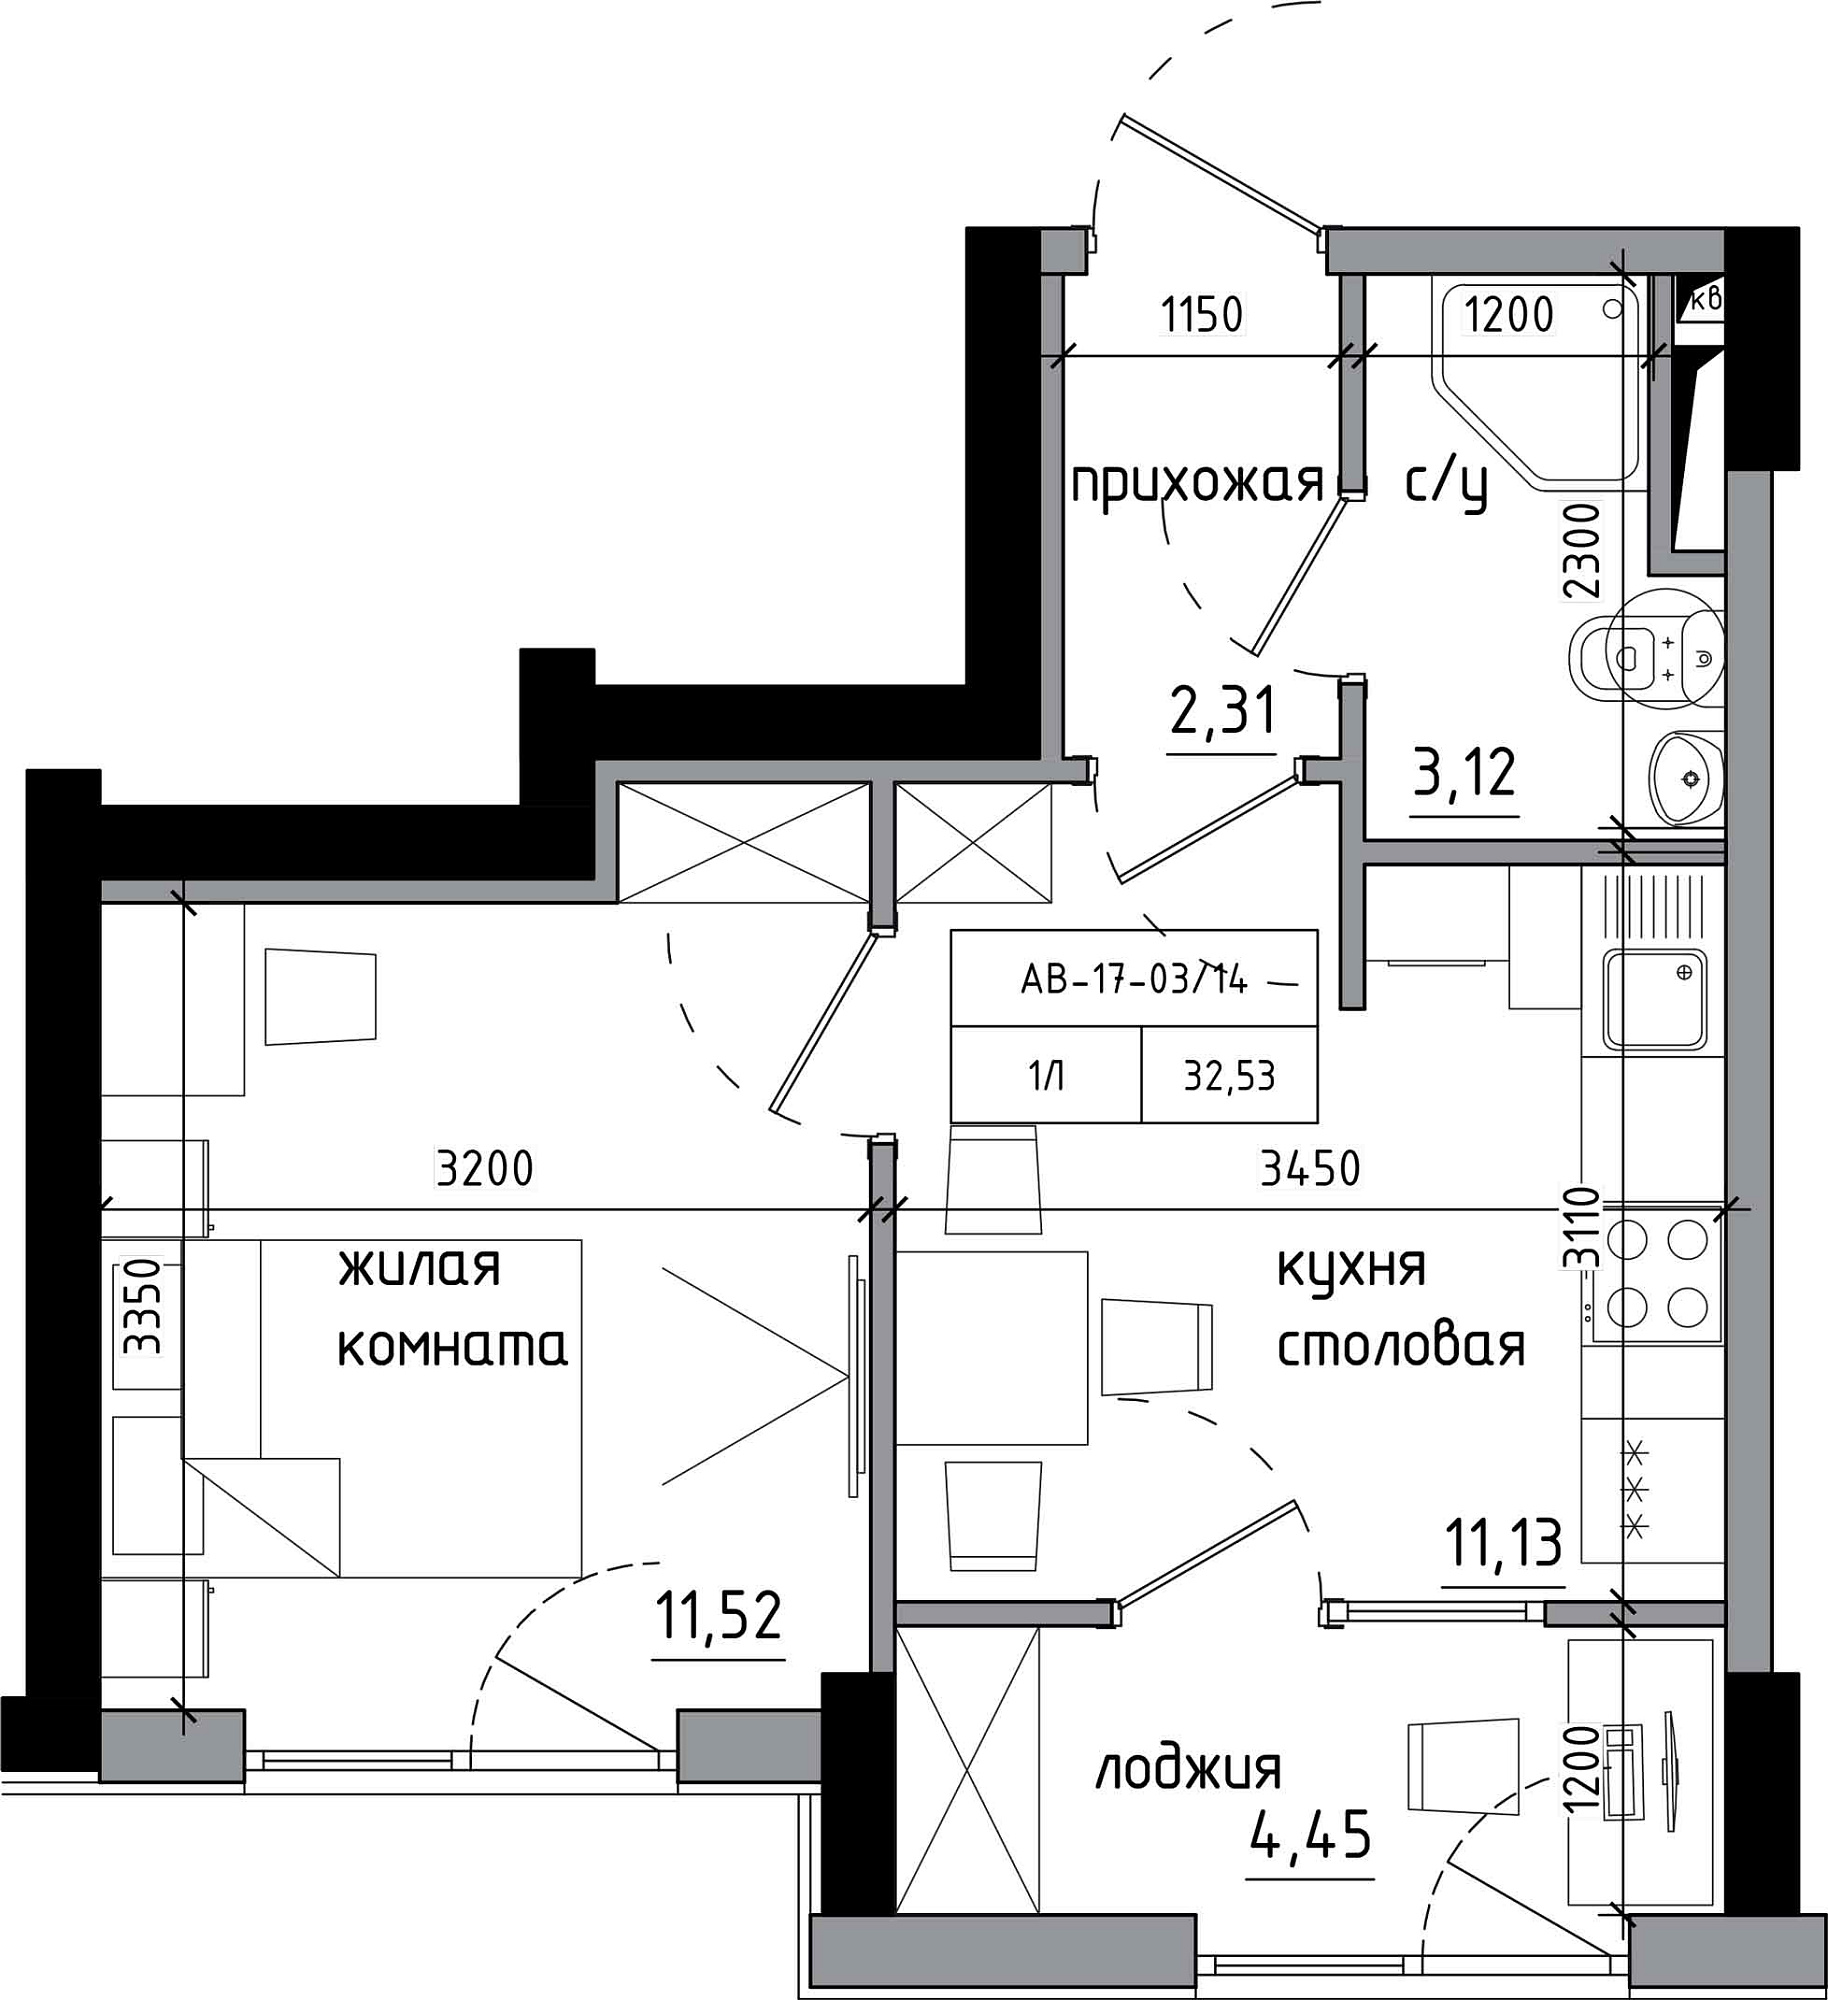 Планировка 1-к квартира площей 32.53м2, AB-17-03/00014.